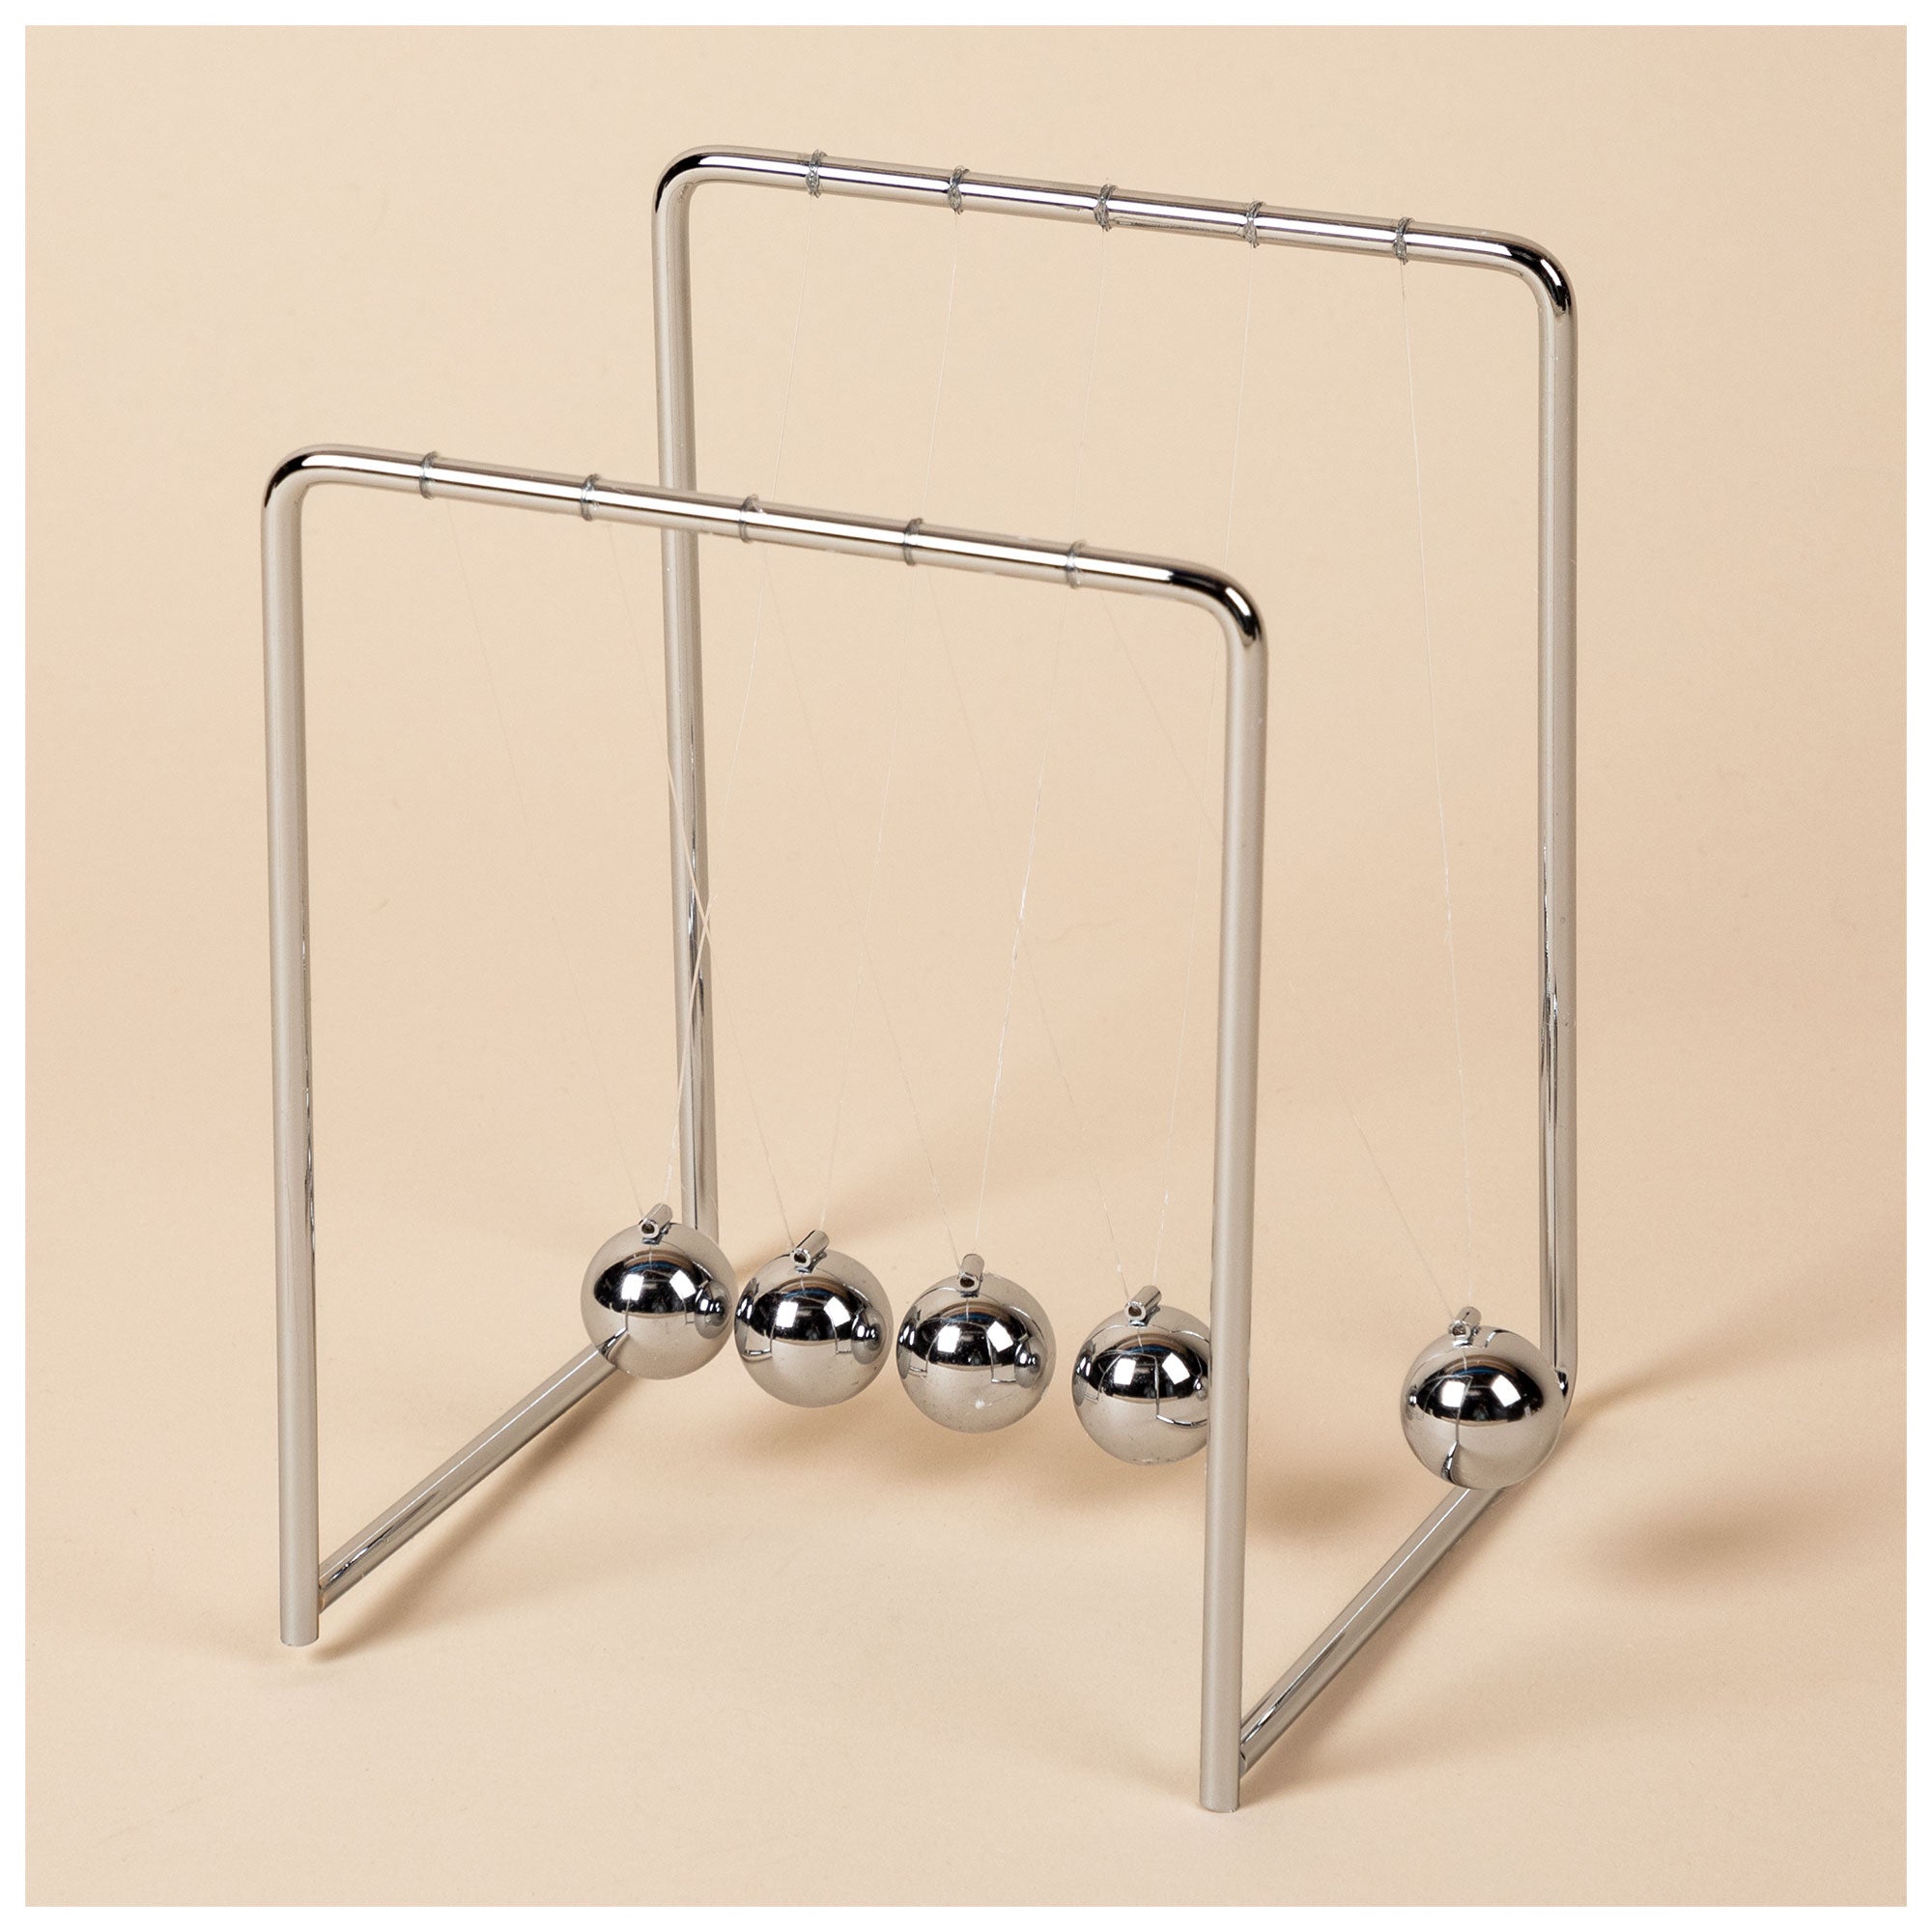 Kinetic Art Balance Toy - Newton's Cradle